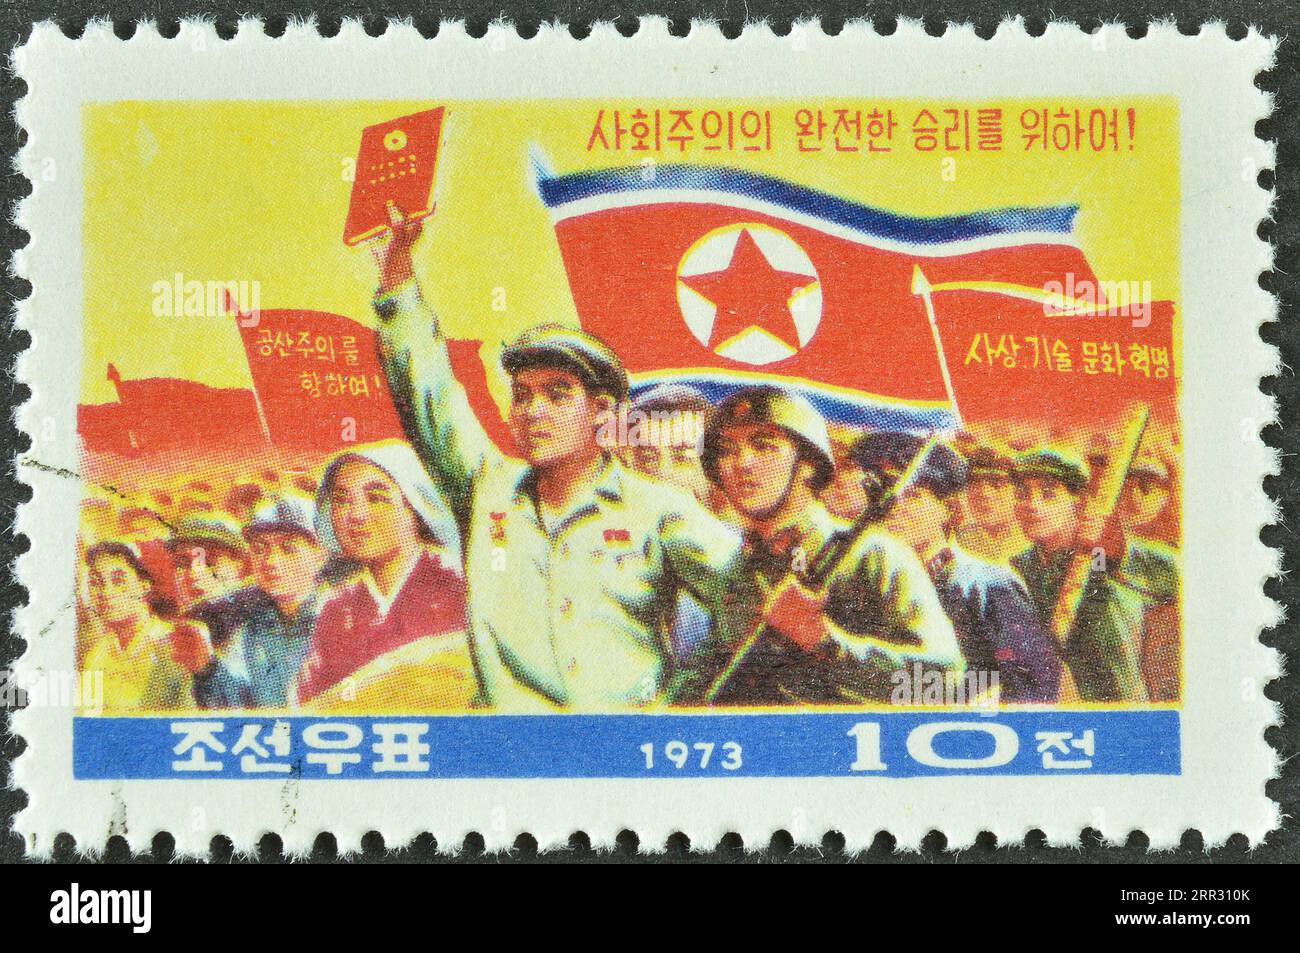 Timbre-poste annulé imprimé par la Corée du Nord, qui montre foule avec du texte constitutionnel et des bannières, Constitution socialiste, vers 1973 Banque D'Images